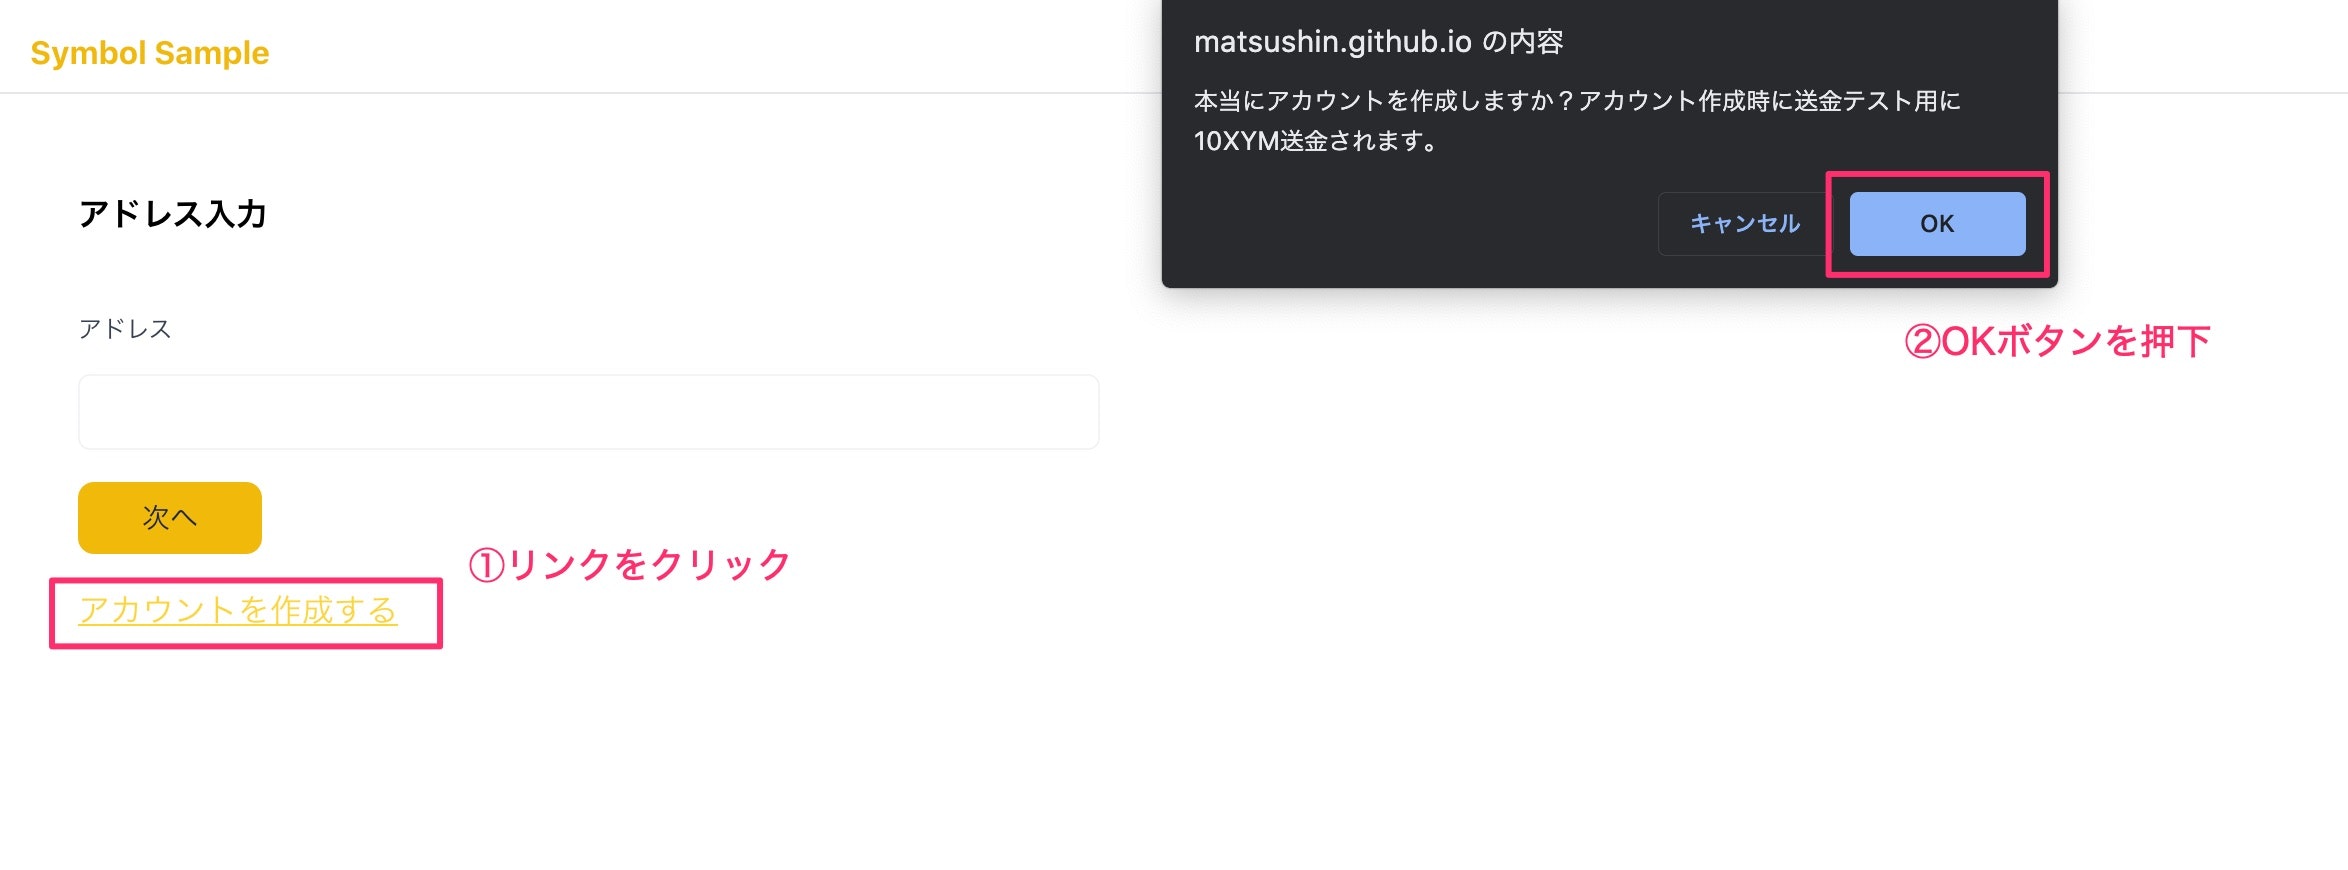 matsushin_github_io_の内容_と_Symbol_Sample_App.jpg